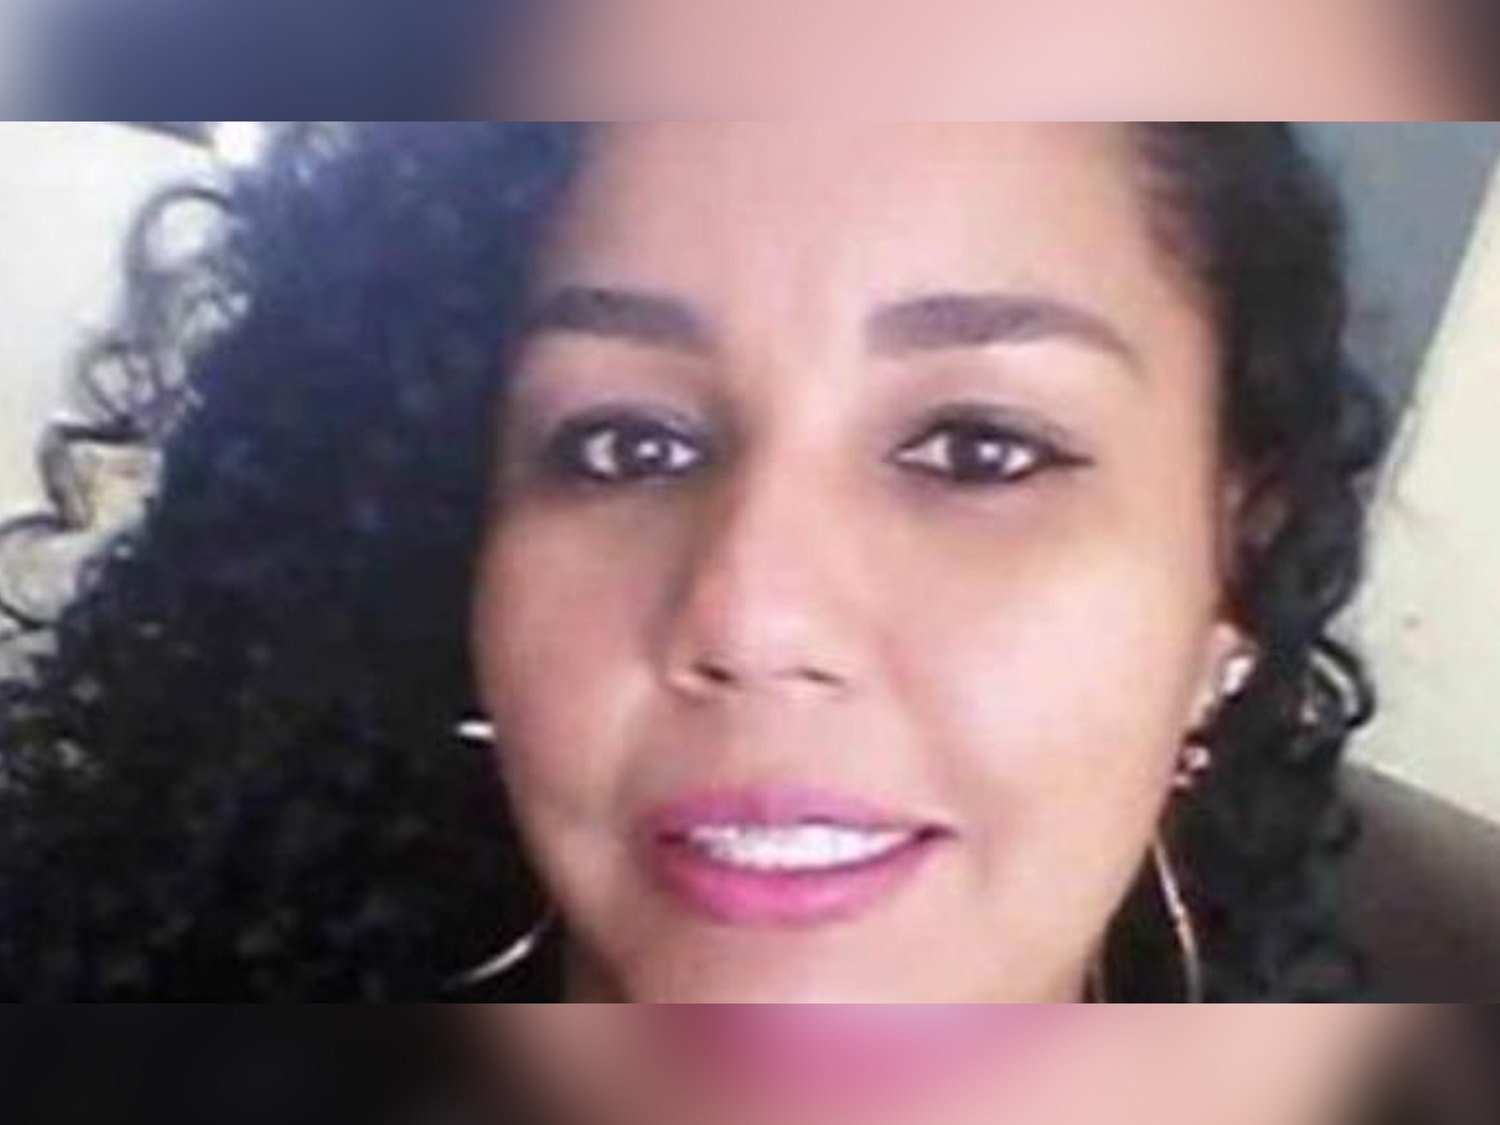 Muere de asfixia una mujer en Brasil después de teñirse el pelo